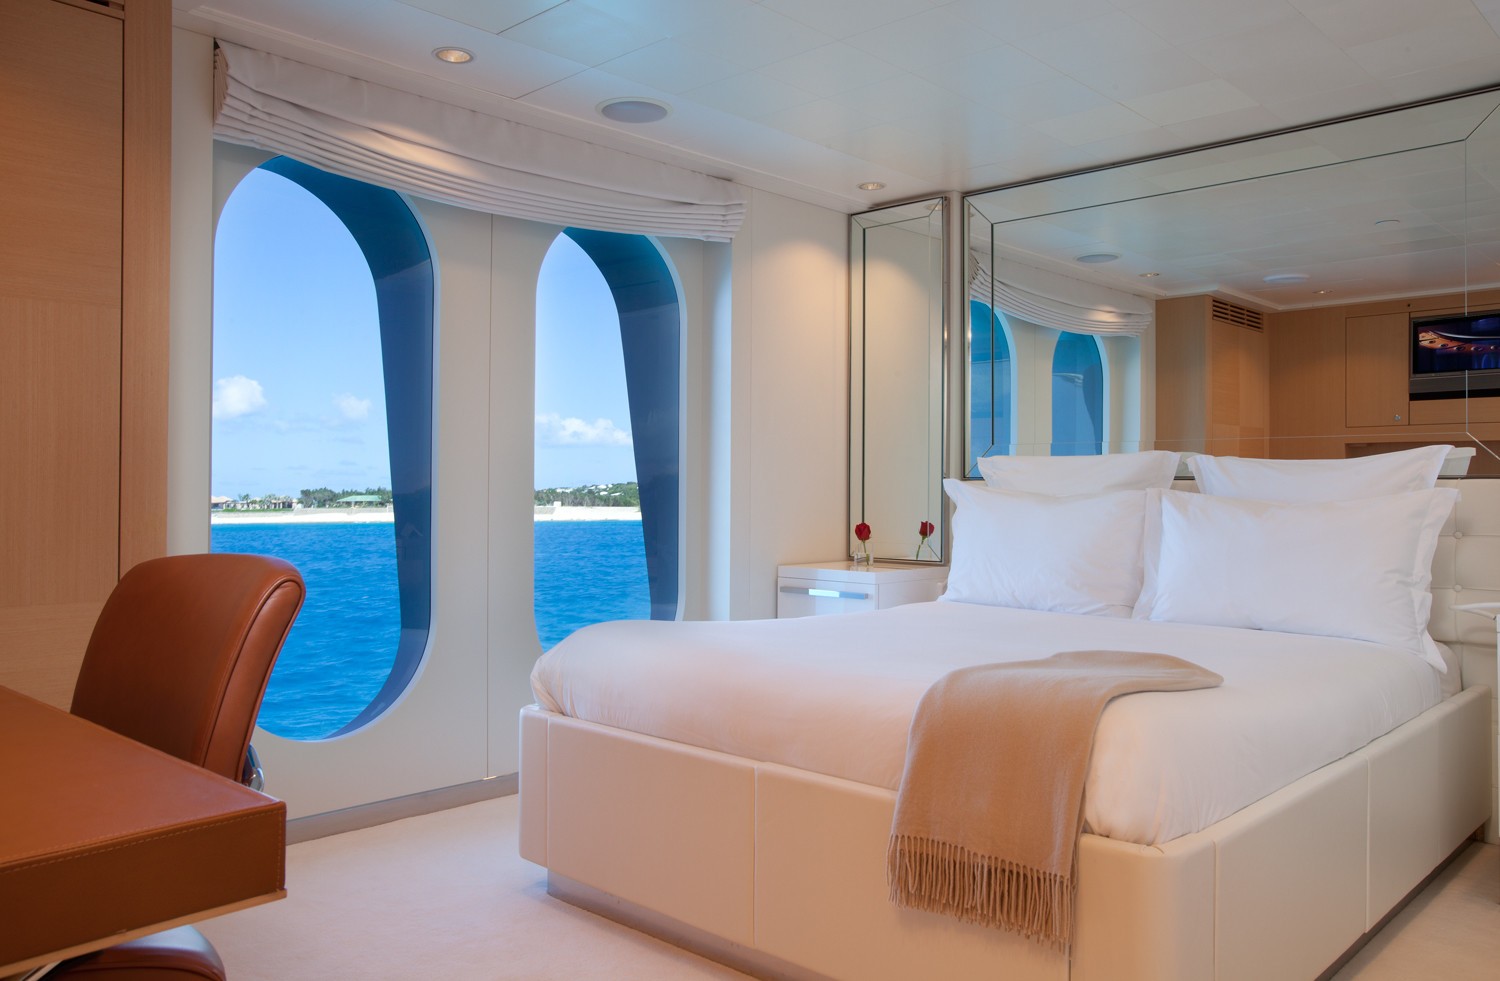 Guest's Cabin On Board Yacht IDOL